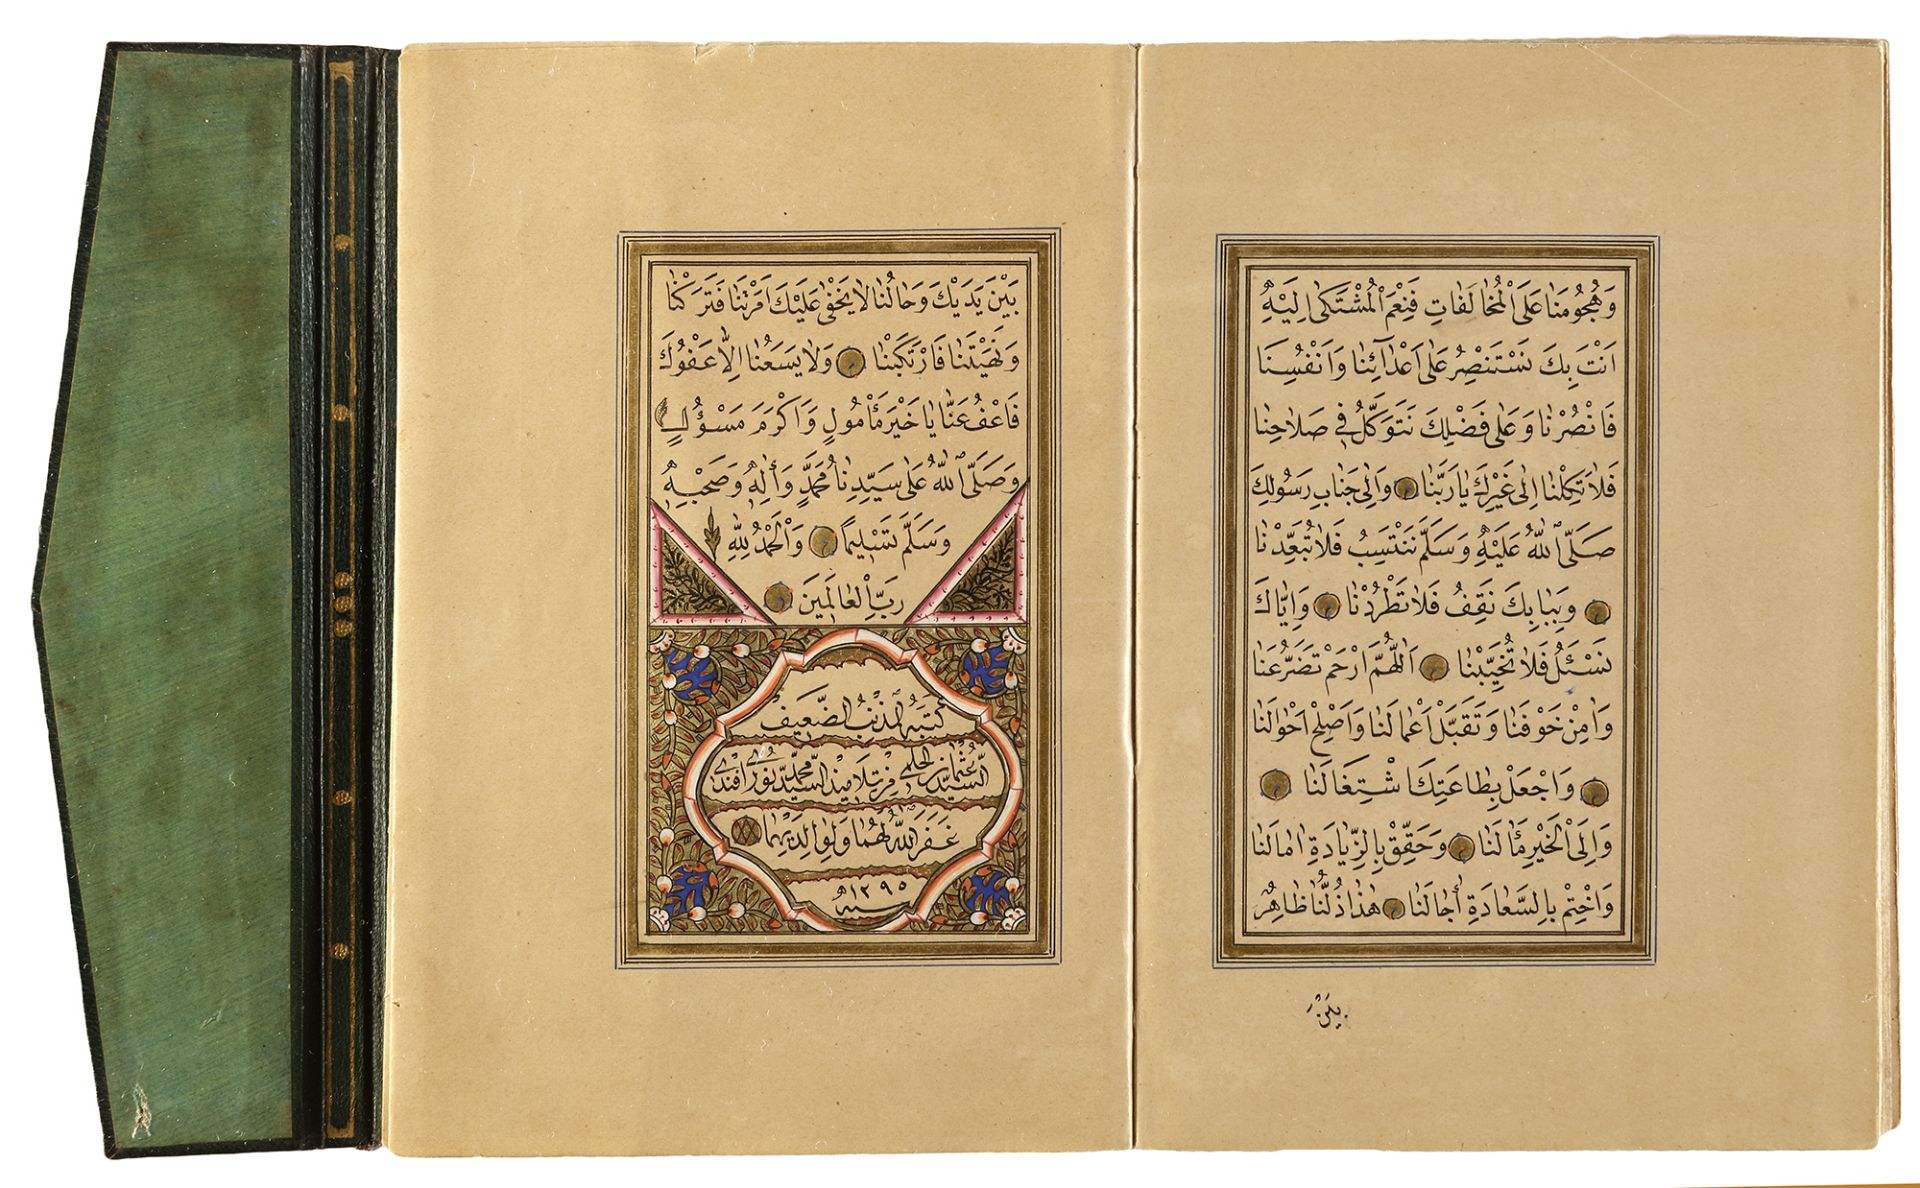 DALA’IL AL-KHAYRAT BY OSMAN HILMI STUDENT OF MUHAMMED ANWAR EFENDI, TURKEY, 1295 AH/1878 AD - Image 7 of 9